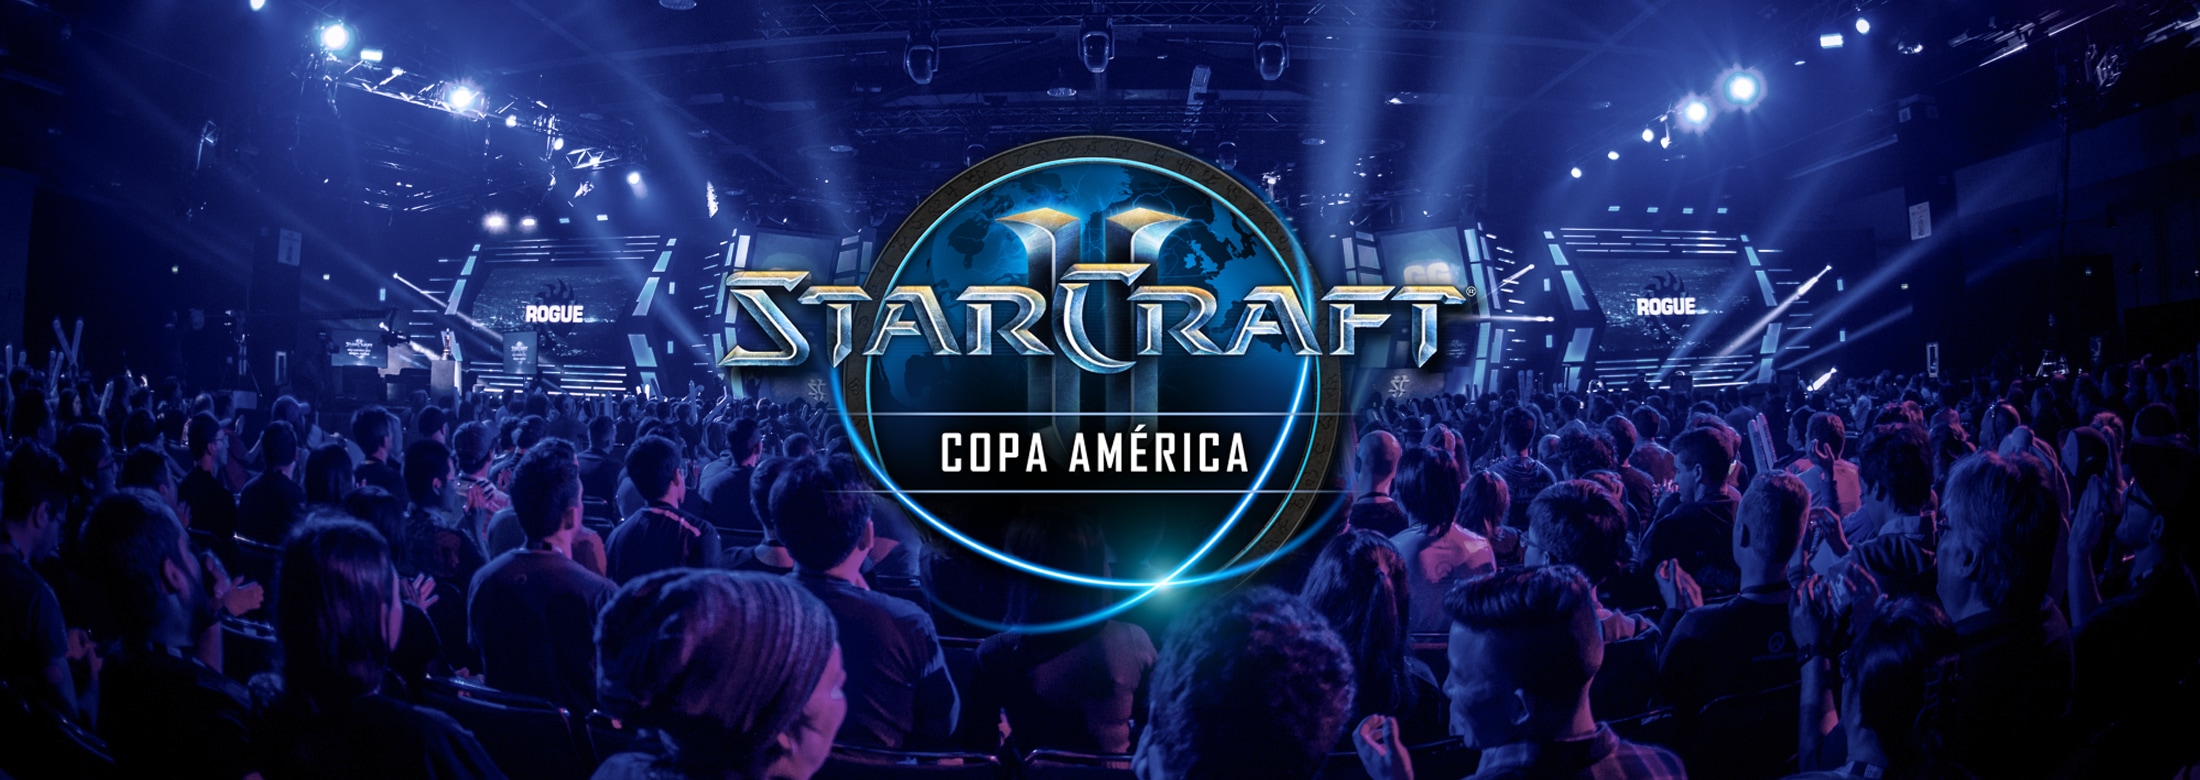 Bem vindos a Copa América 2019 de StarCraft II!